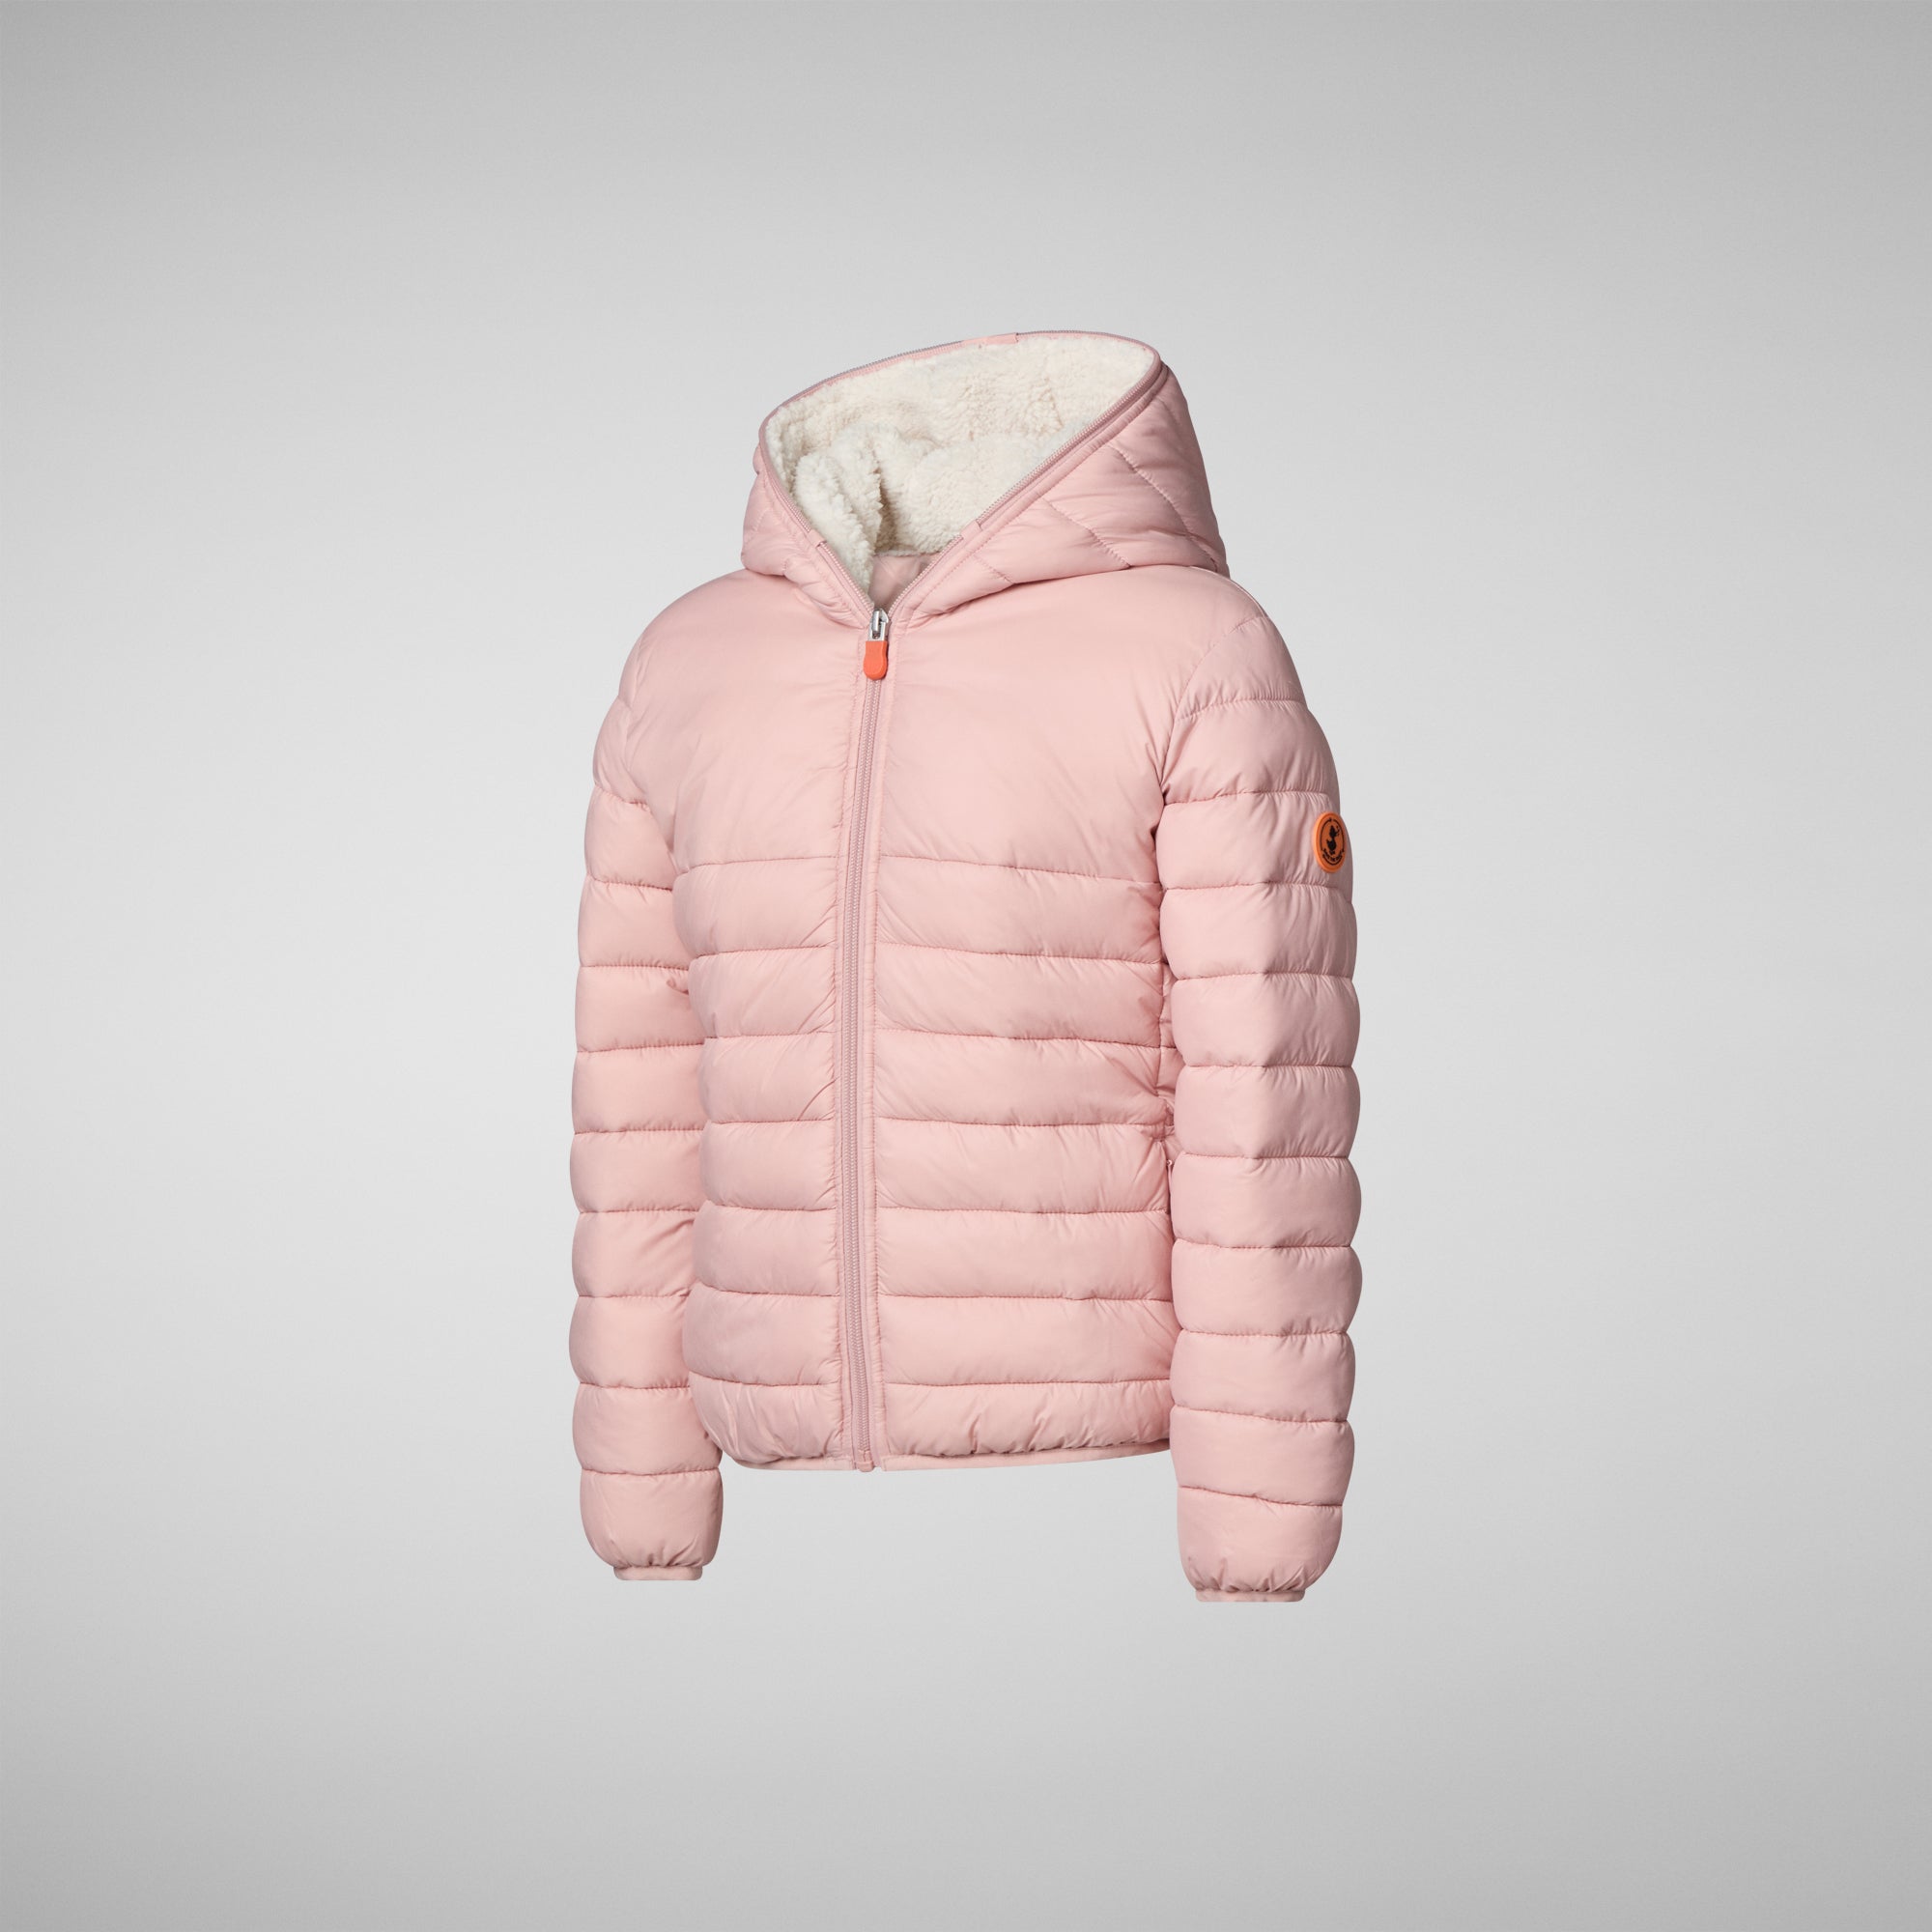 Girls' animal free hooded puffer jacket Leci in blush pink